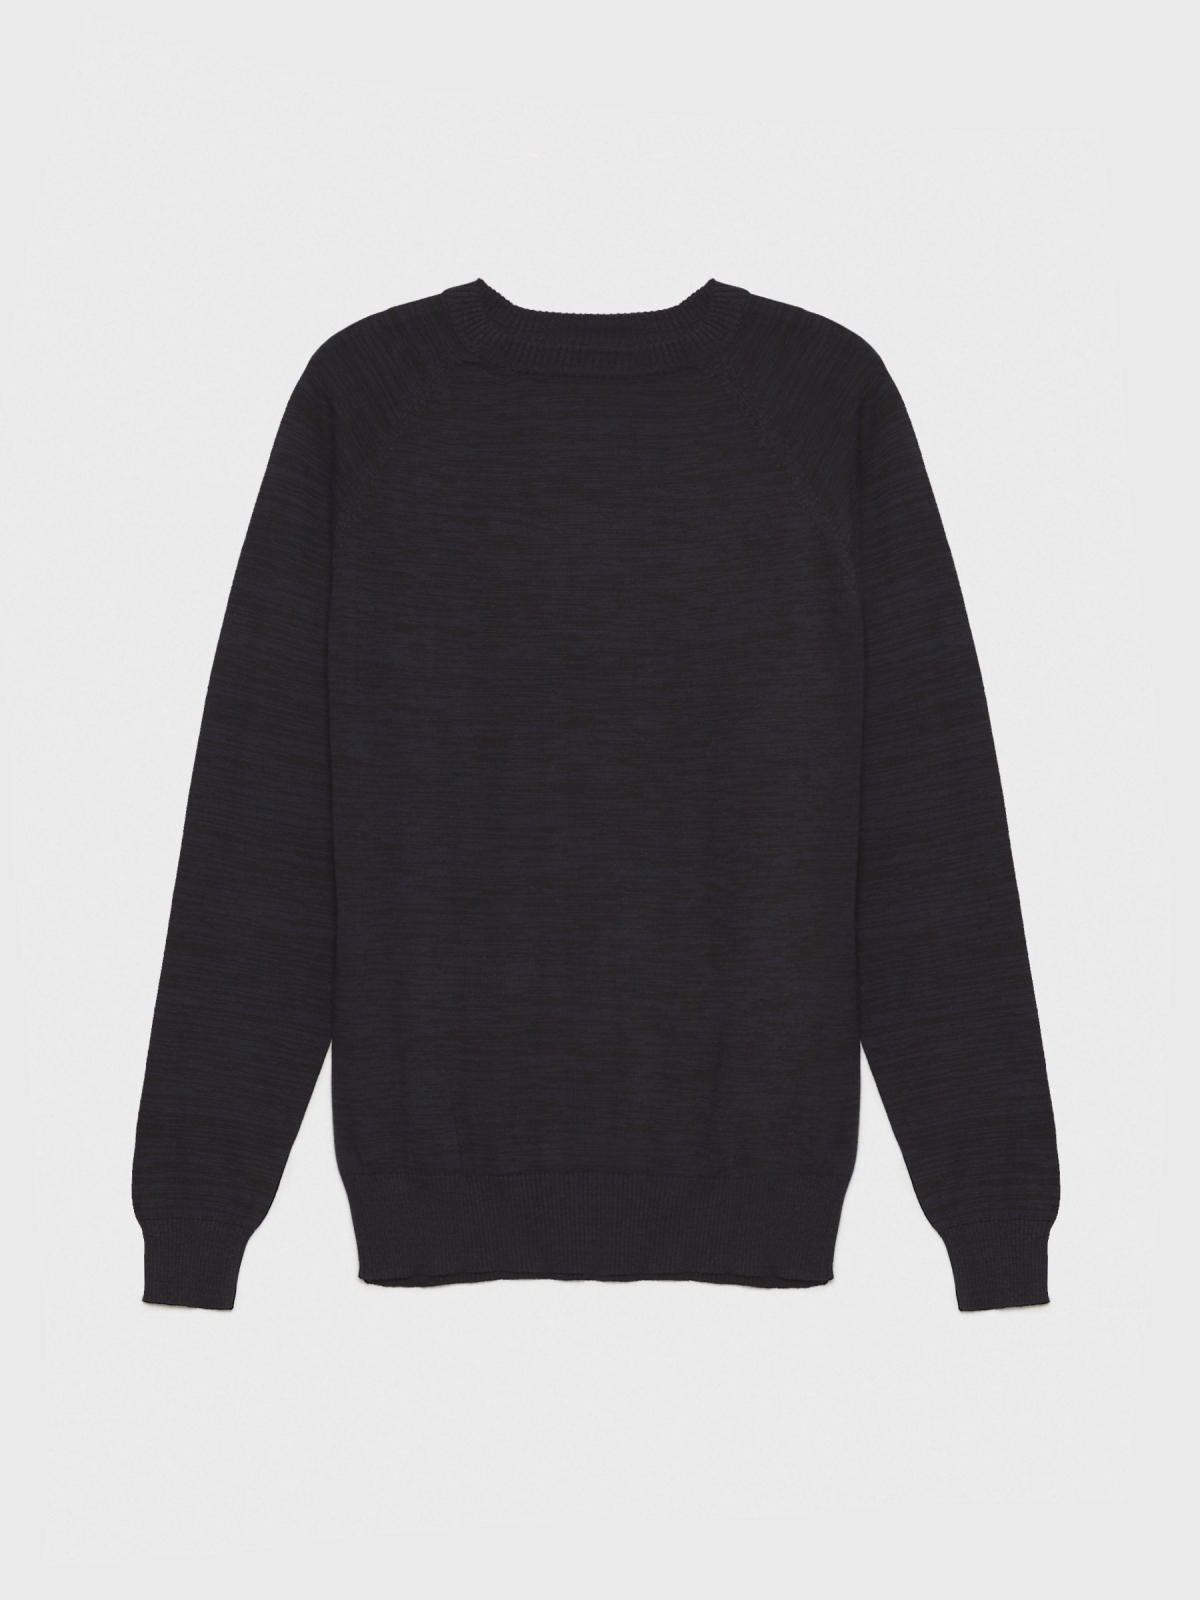  Basic mottled sweater black